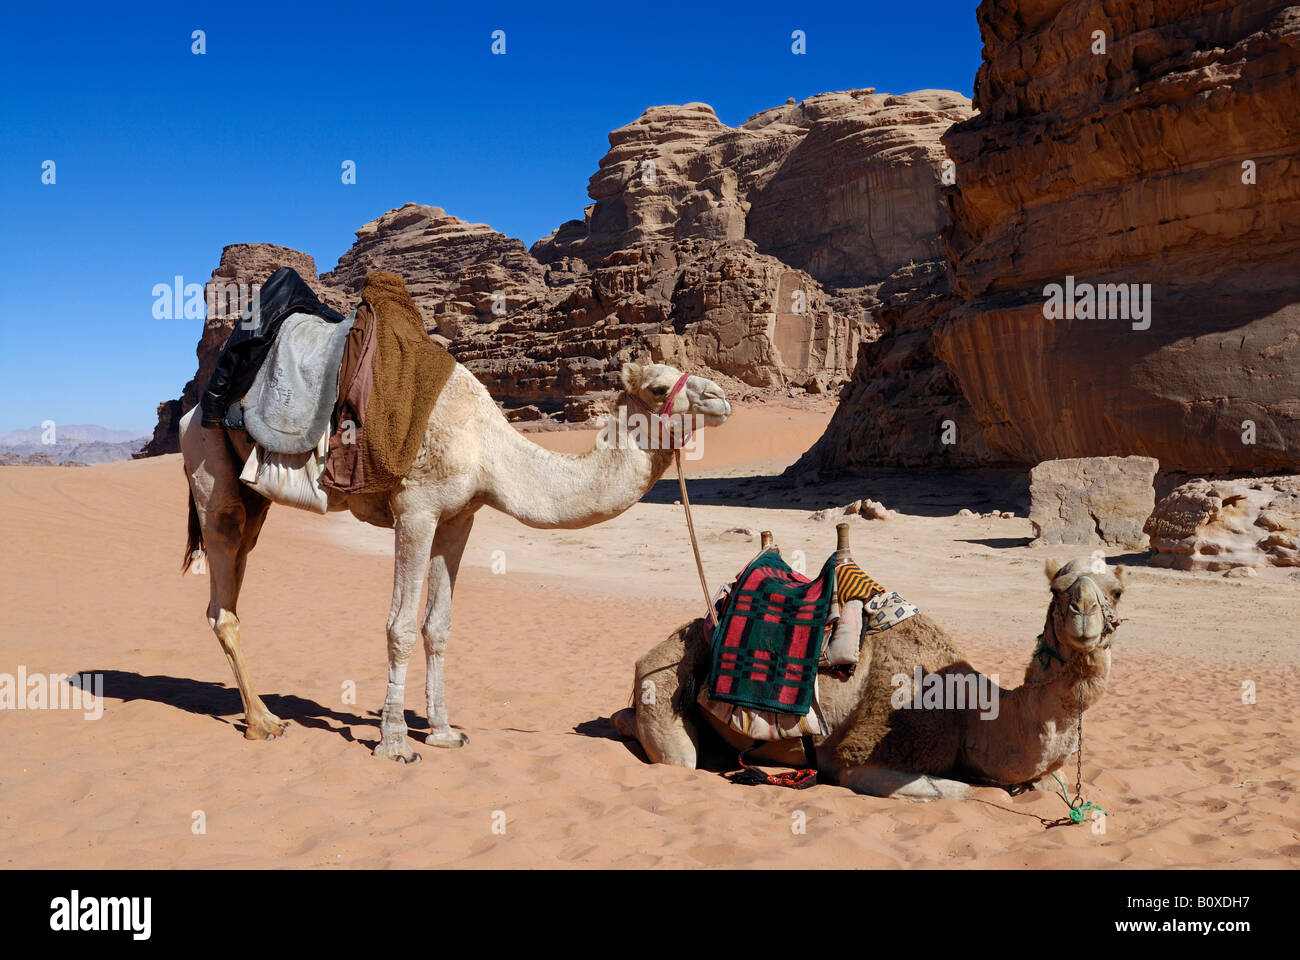 desert of Wadi Rum, camels in front, Jordan, Arabia Stock Photo